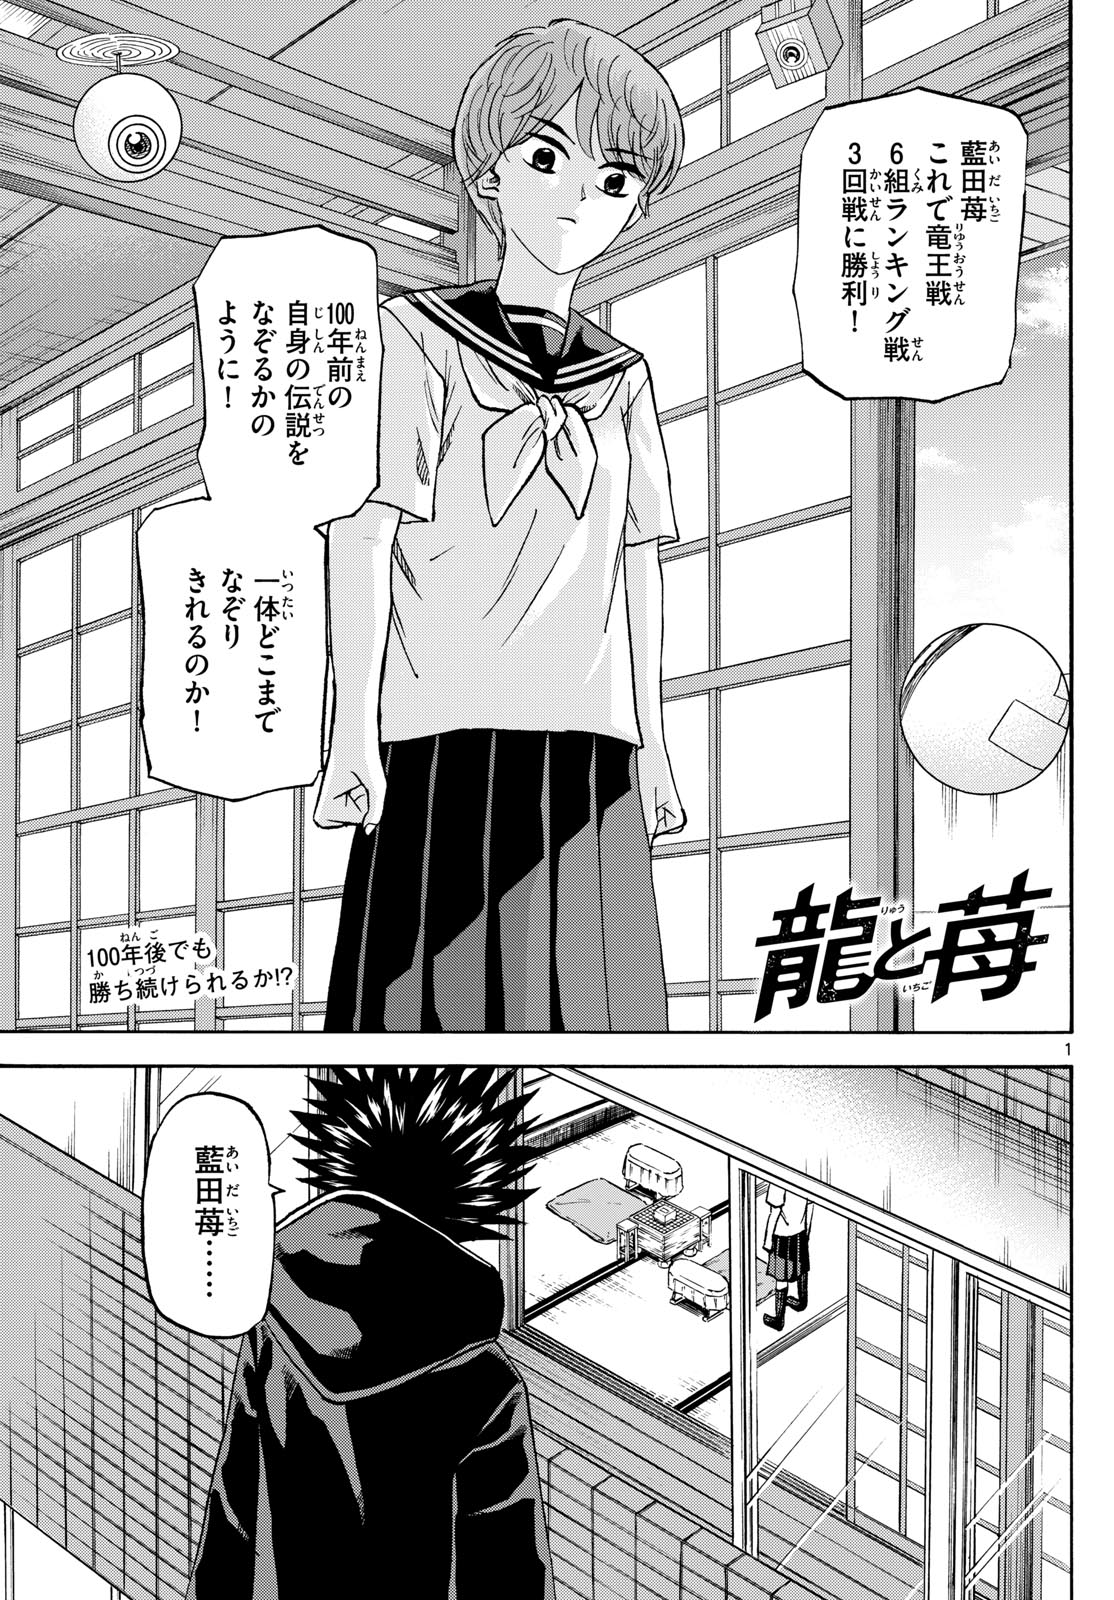 Tatsu to Ichigo - Chapter 191 - Page 1